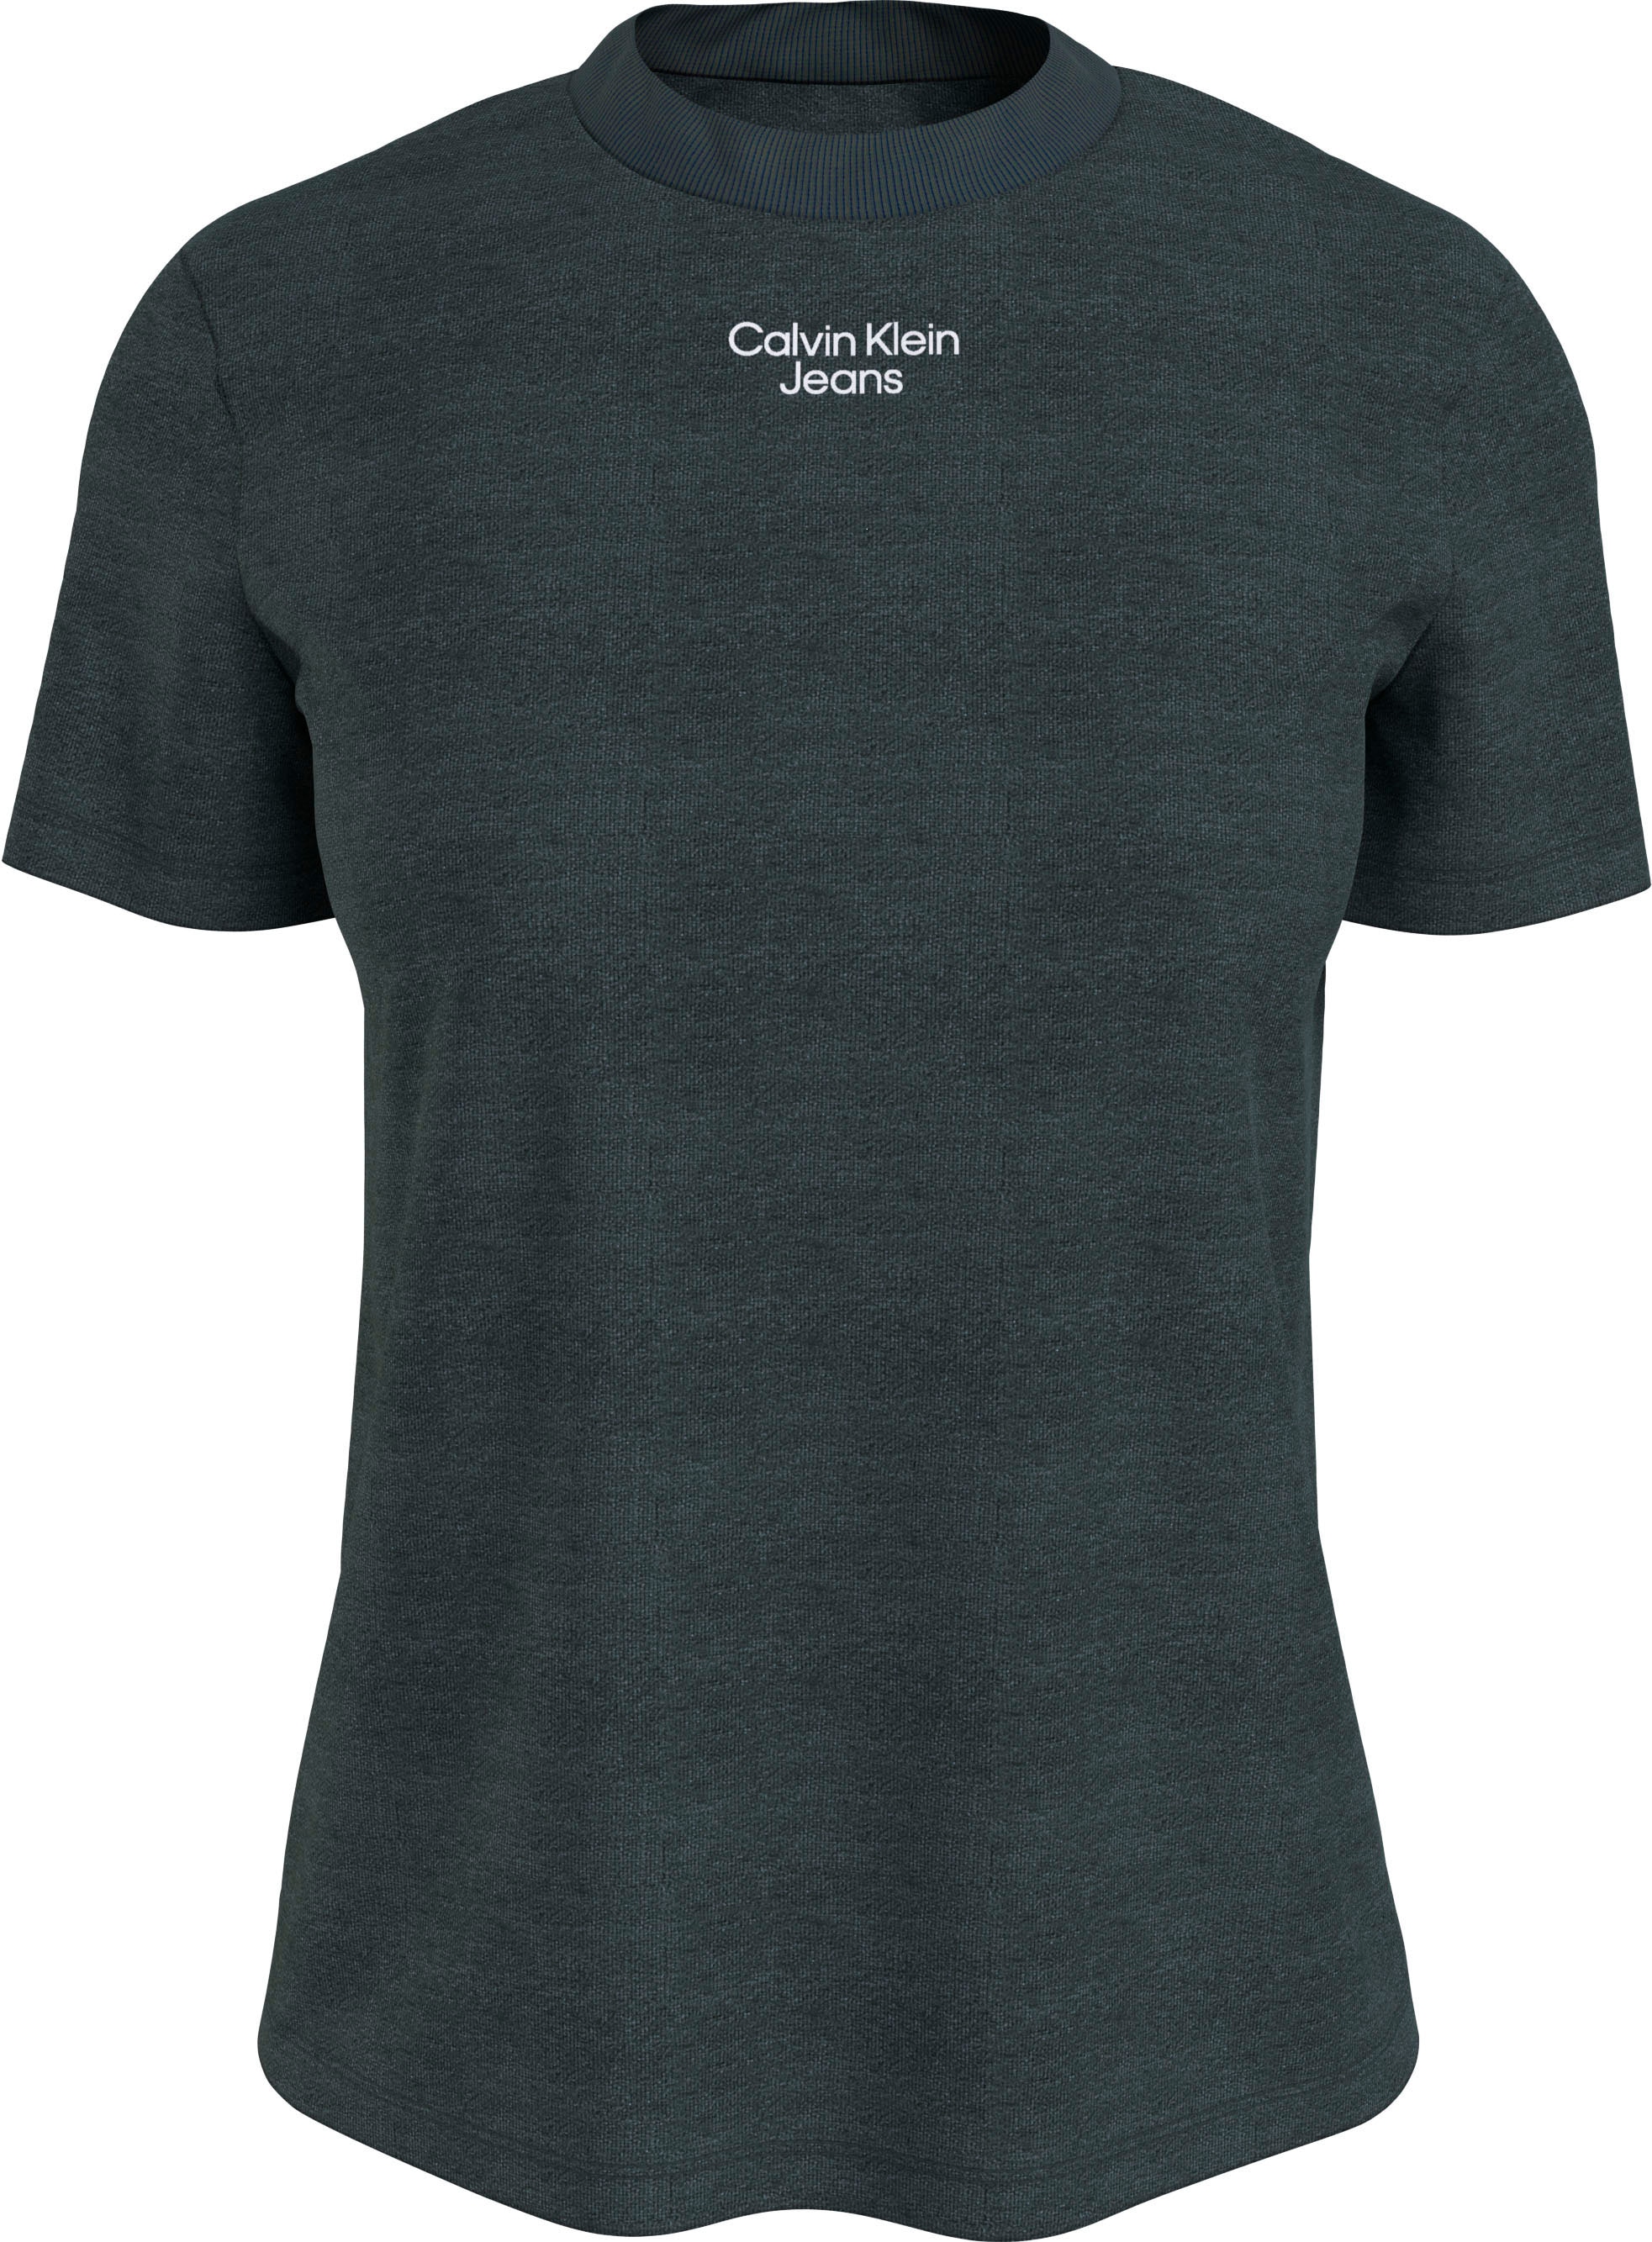 Calvin Klein Jeans T-Shirt »STACKED LOGO MODERN STRAIGHT TEE«, mit dezentem  Calvin Klein Jeans Logodruck online bestellen